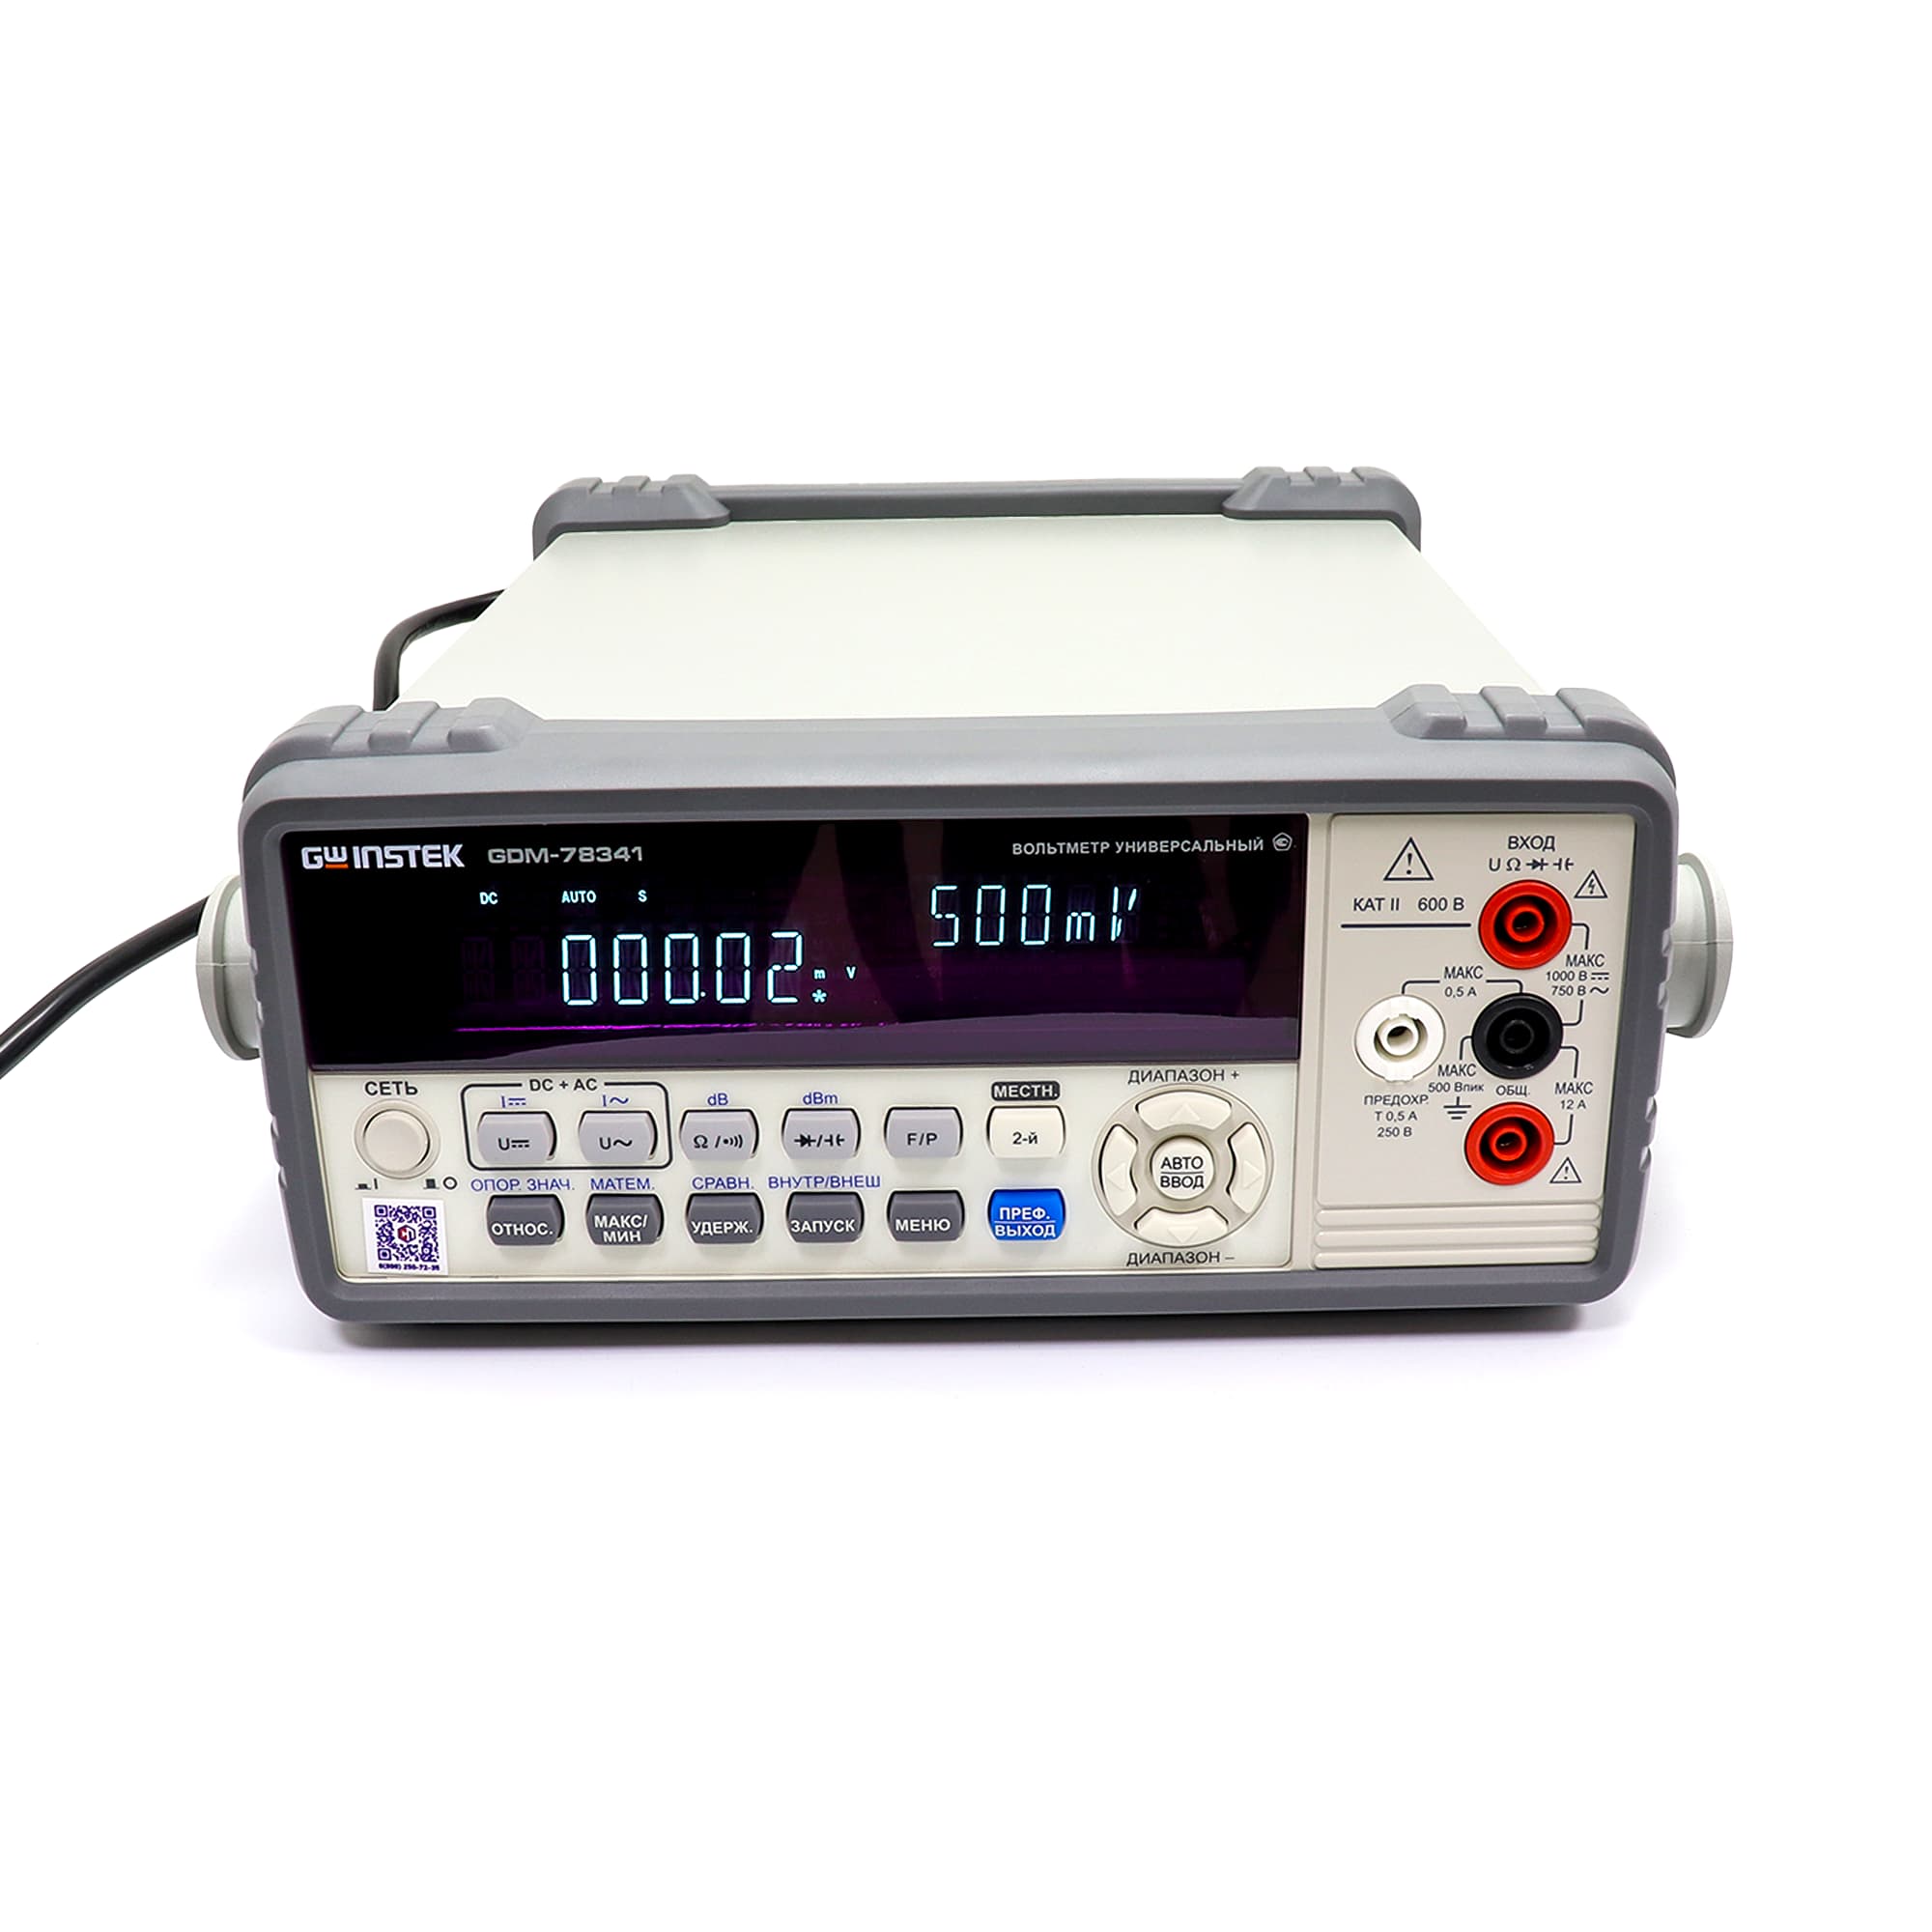 ᐉ GDM-78341 универсальный вольтметр цифровой  по выгодной цене в .